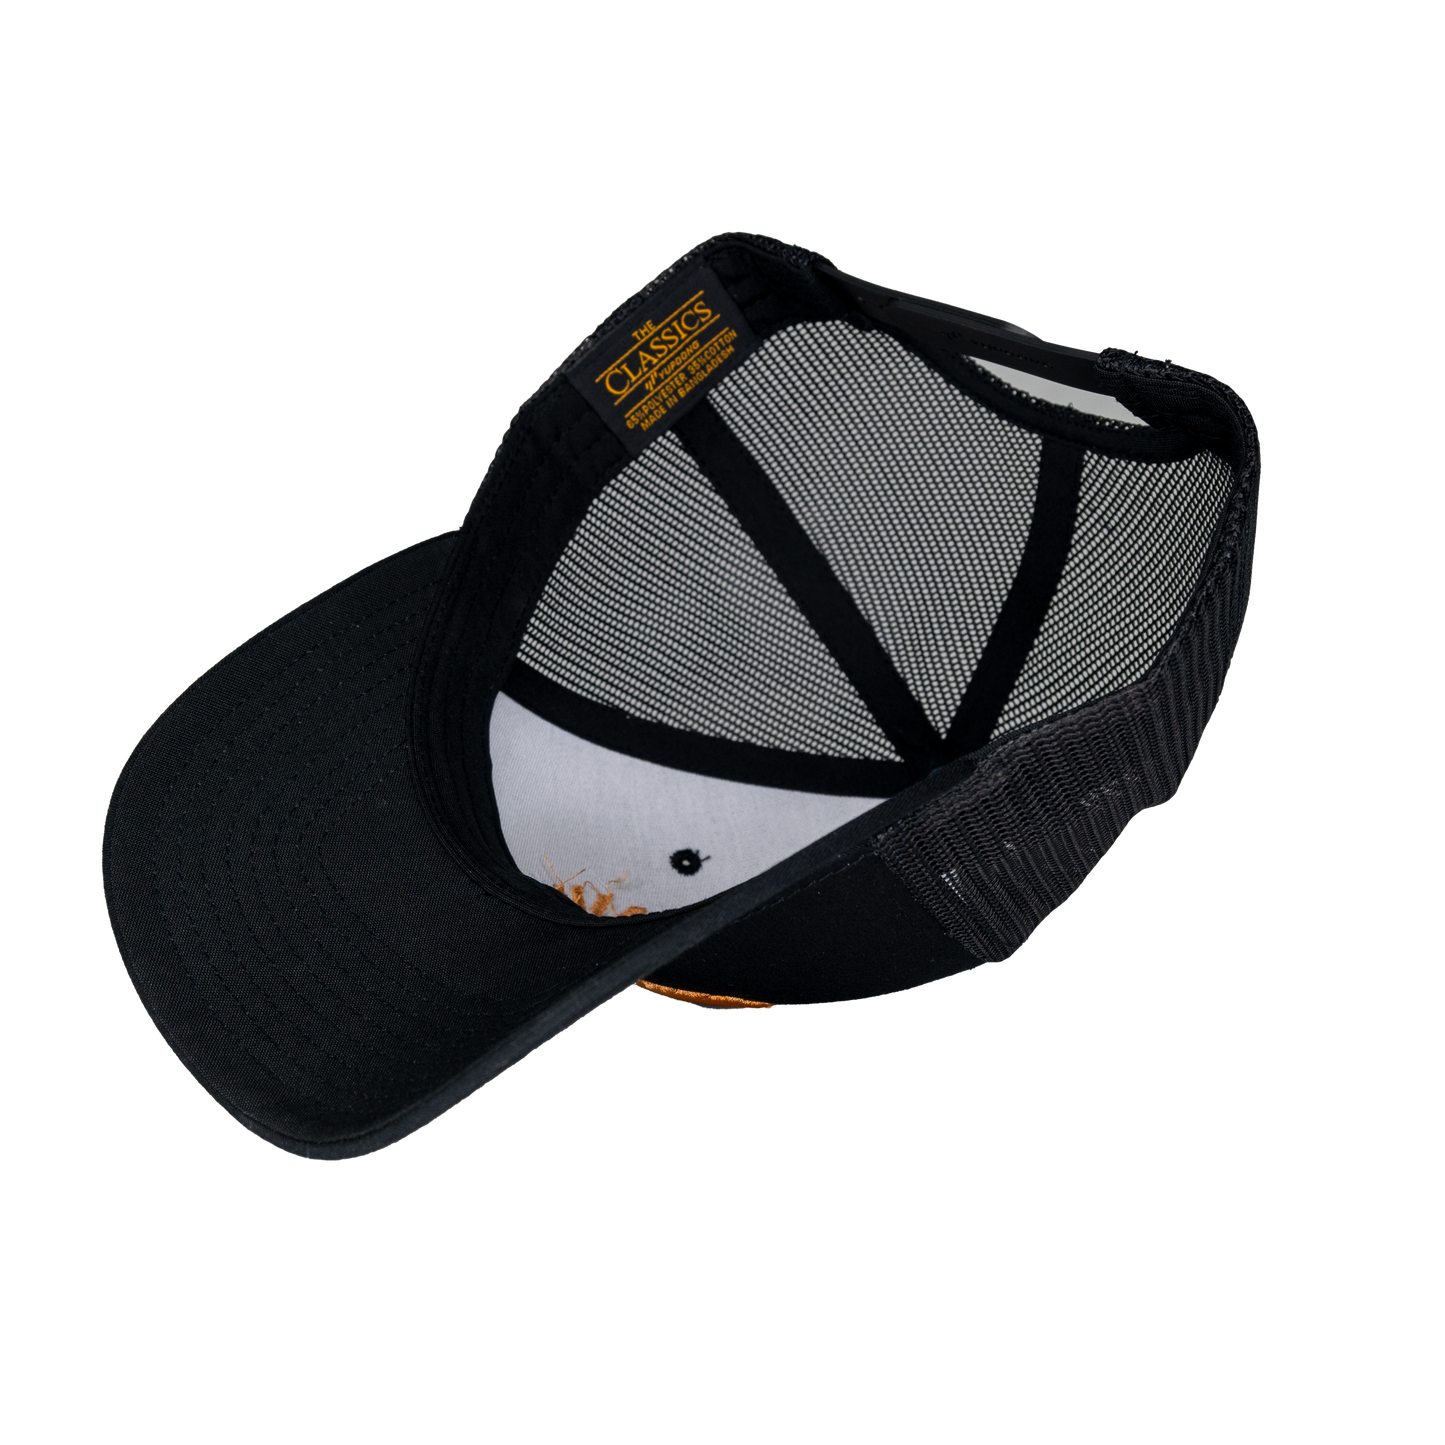 Black-on-Black Whiskey JYPSI Trucker Hat